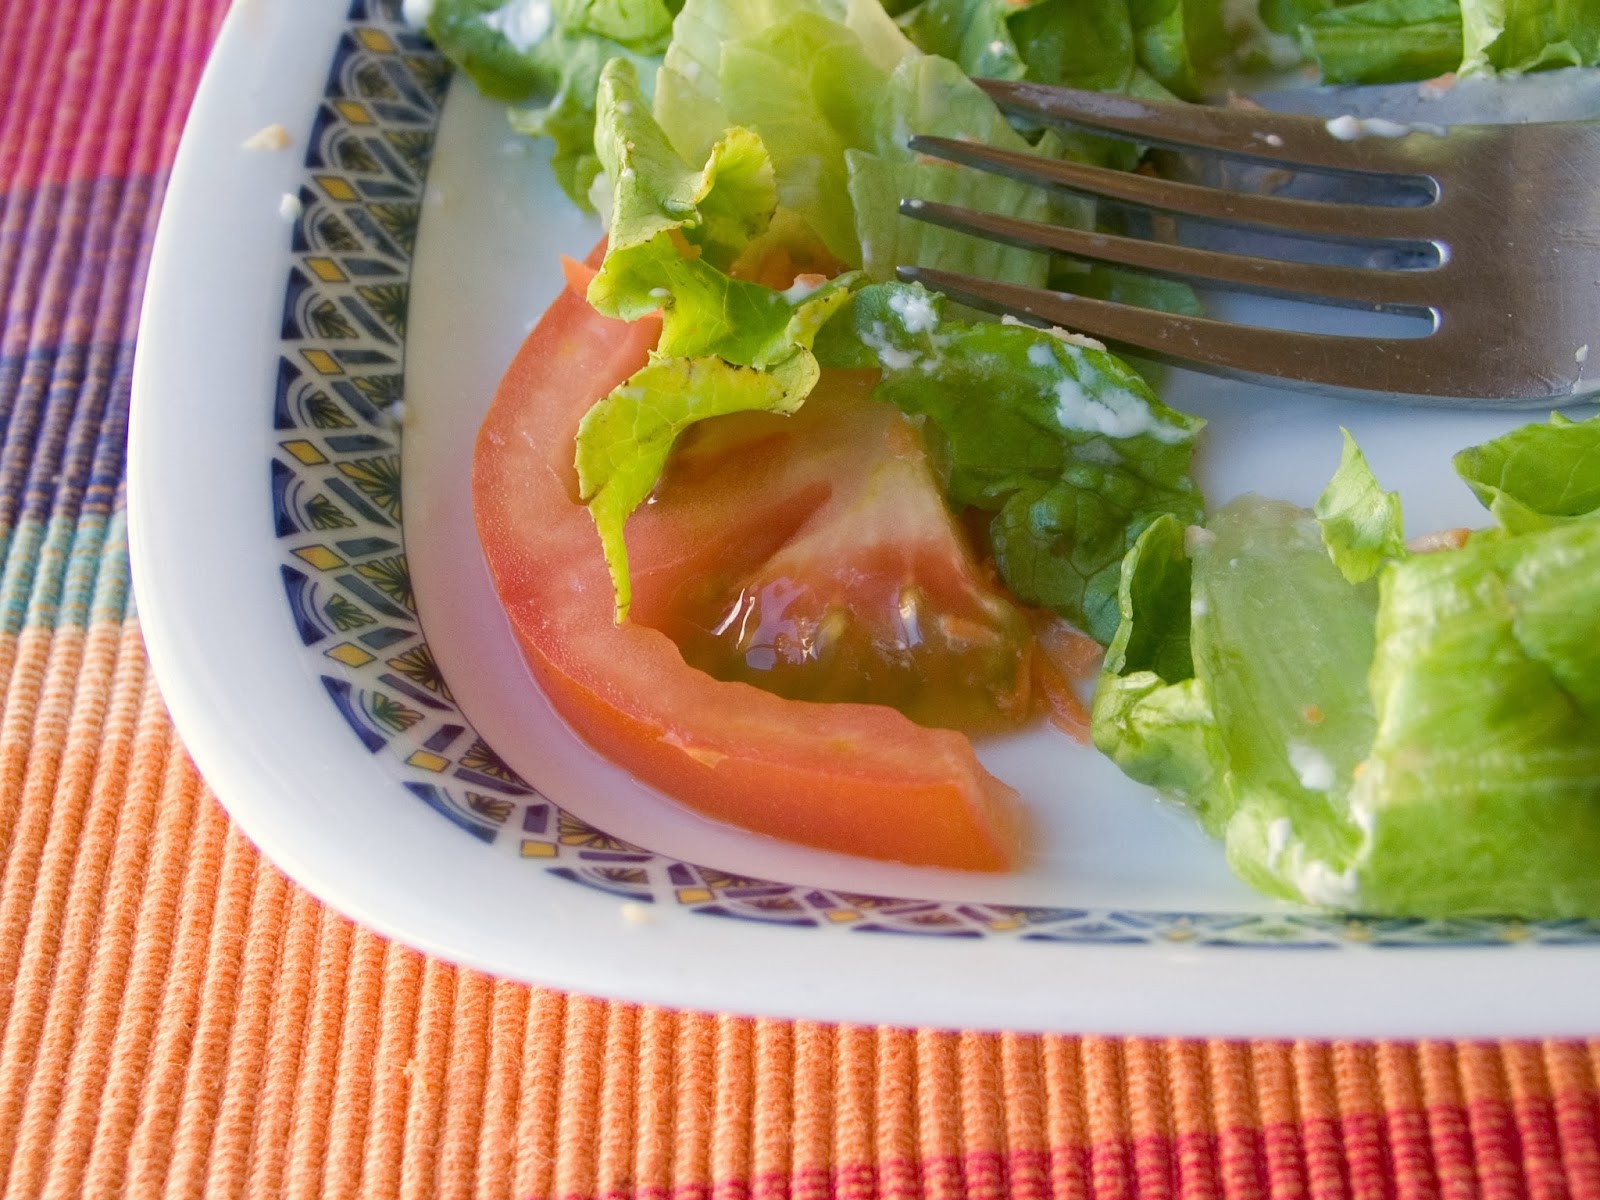 salad, tomato, lettuce, meal, fork, dressing